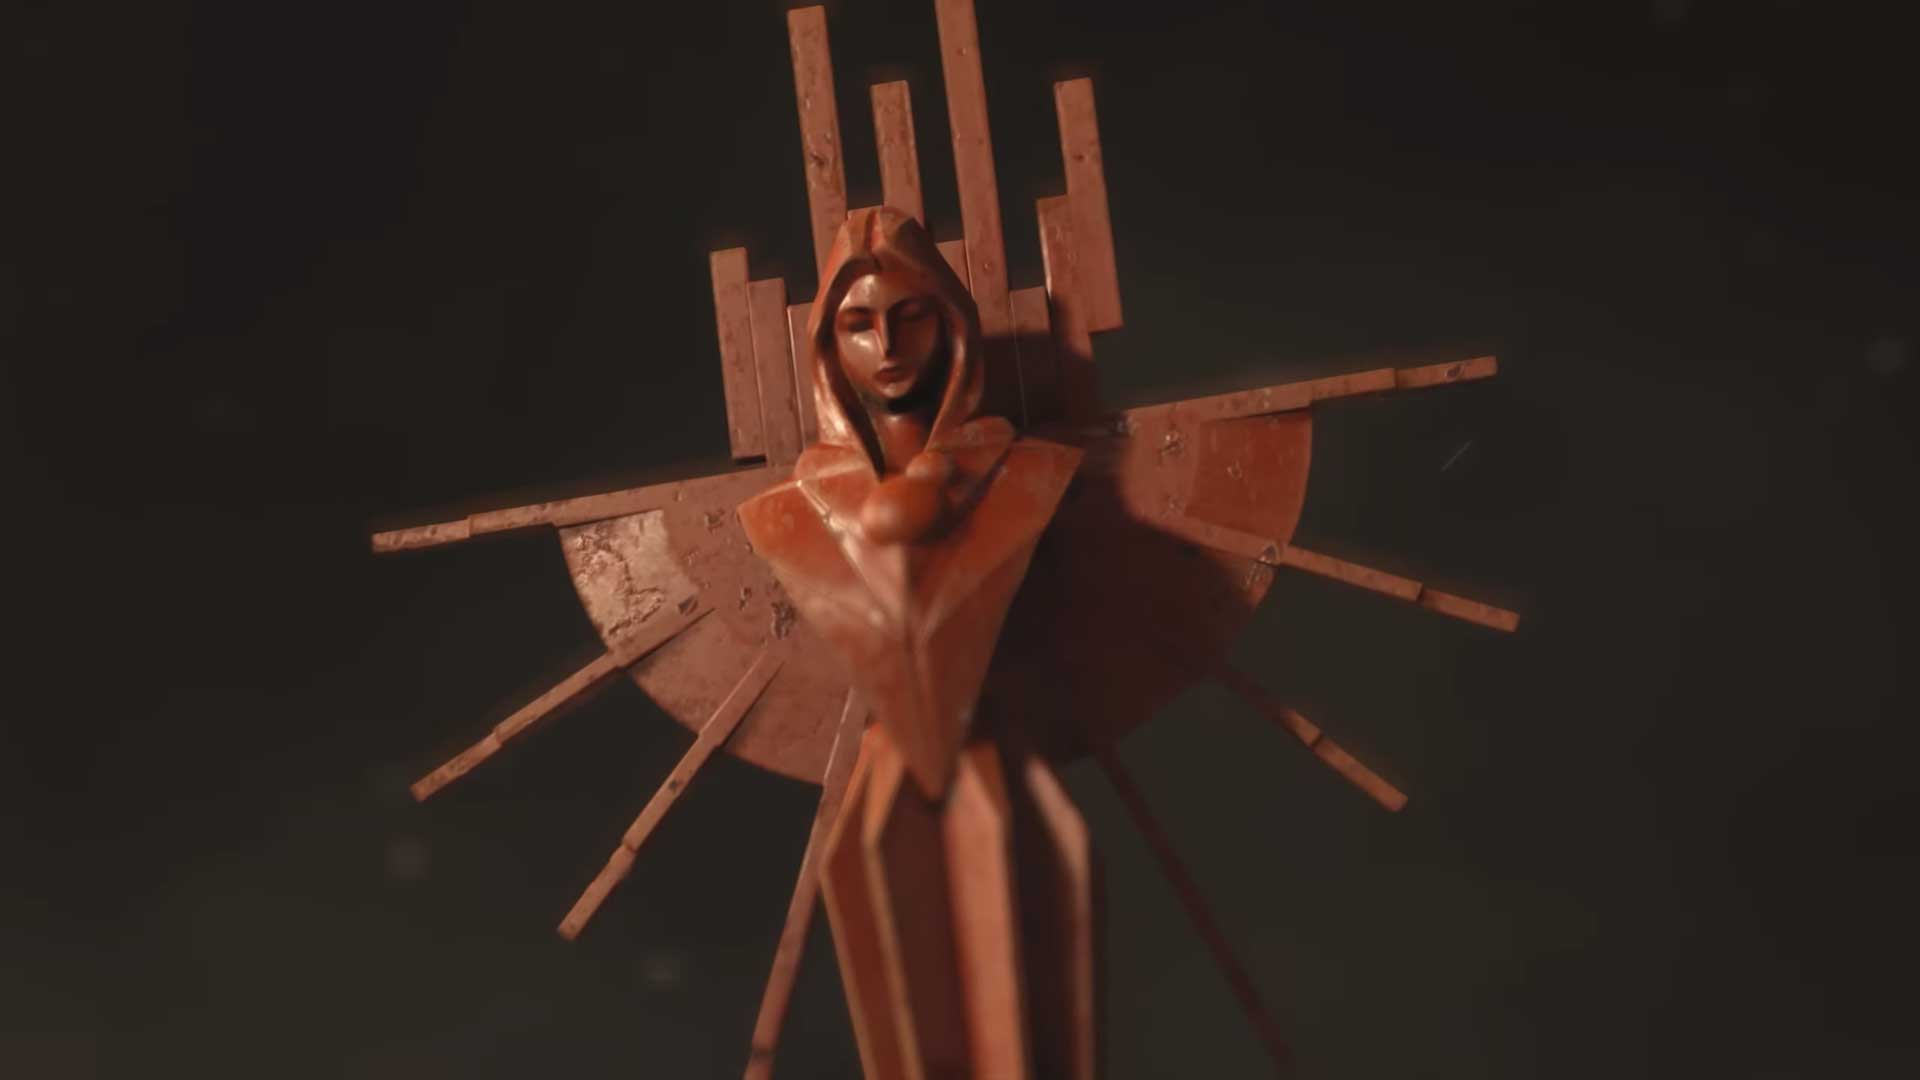 مجسمه قرمز یک زن در تریلر بازی دث استرندینگ ۲